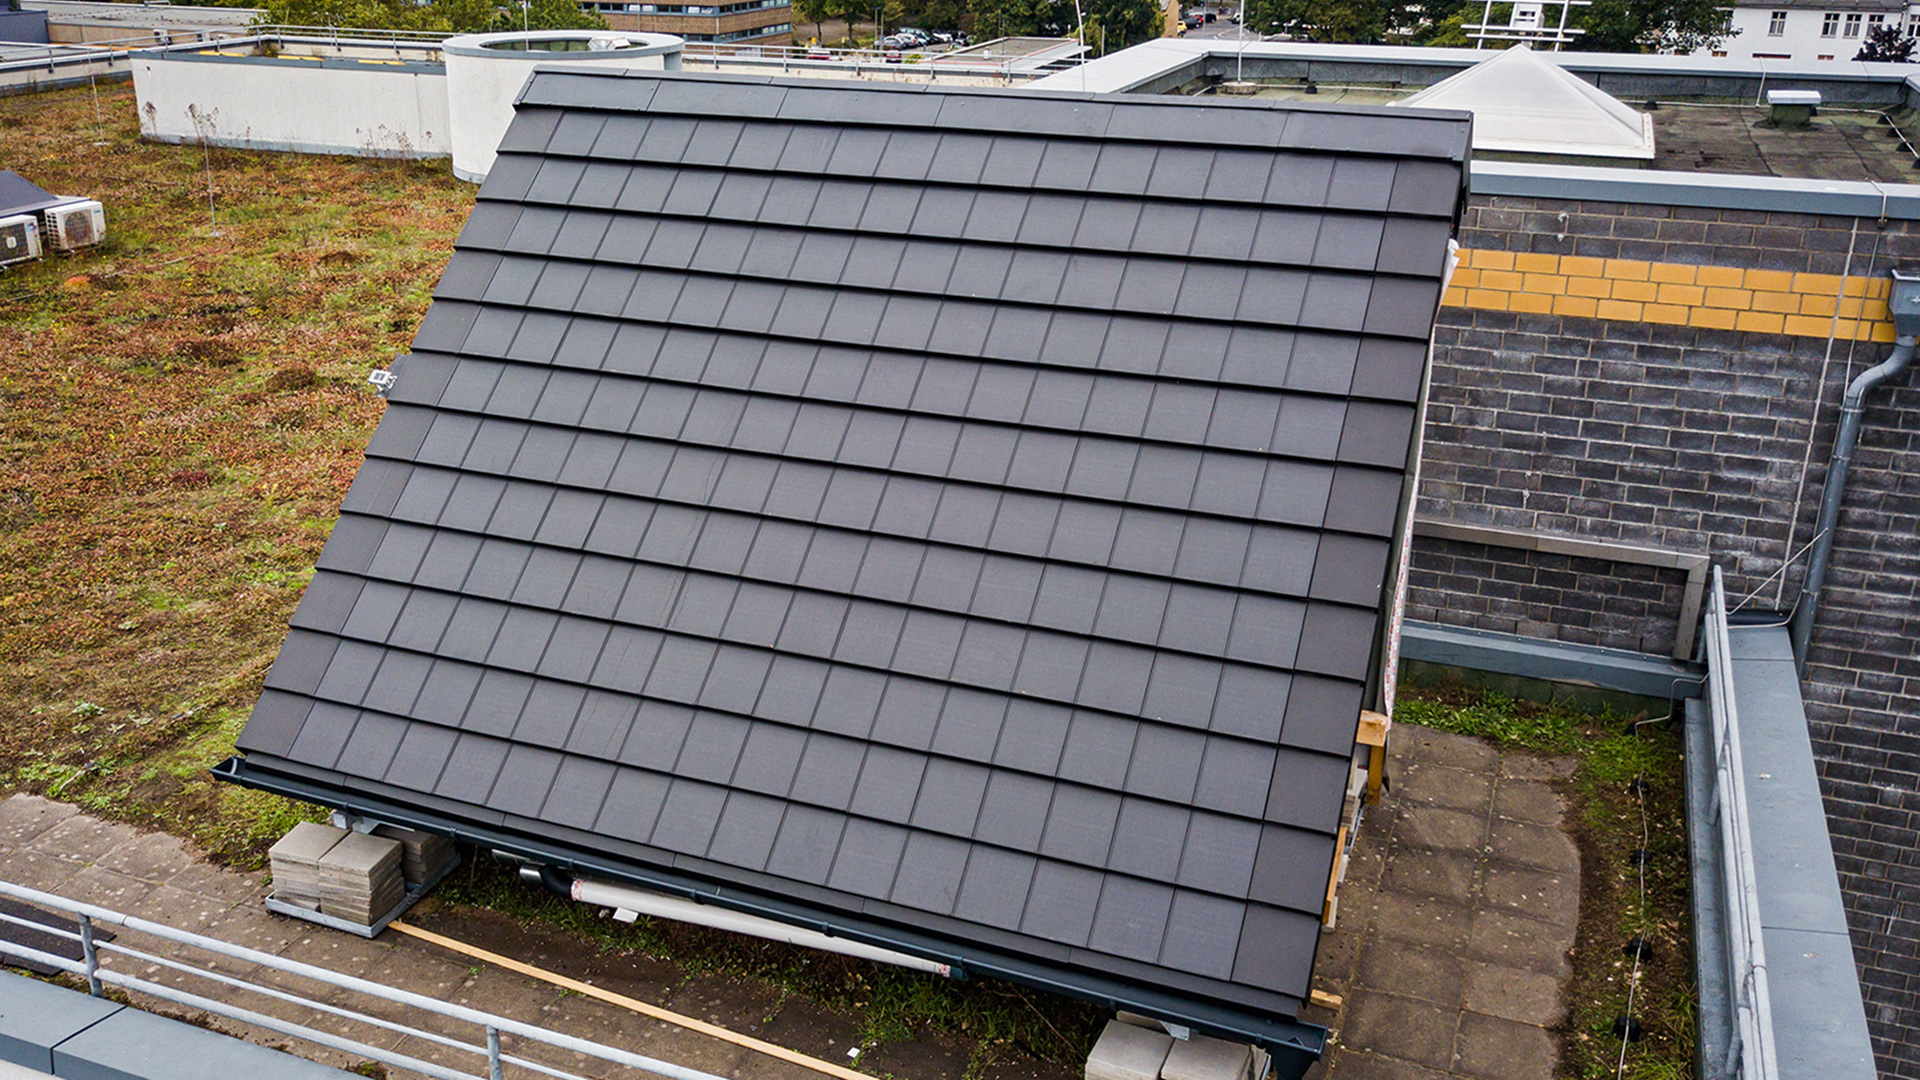 Solardachziegeln auf einem Testdach in Köln | paXos